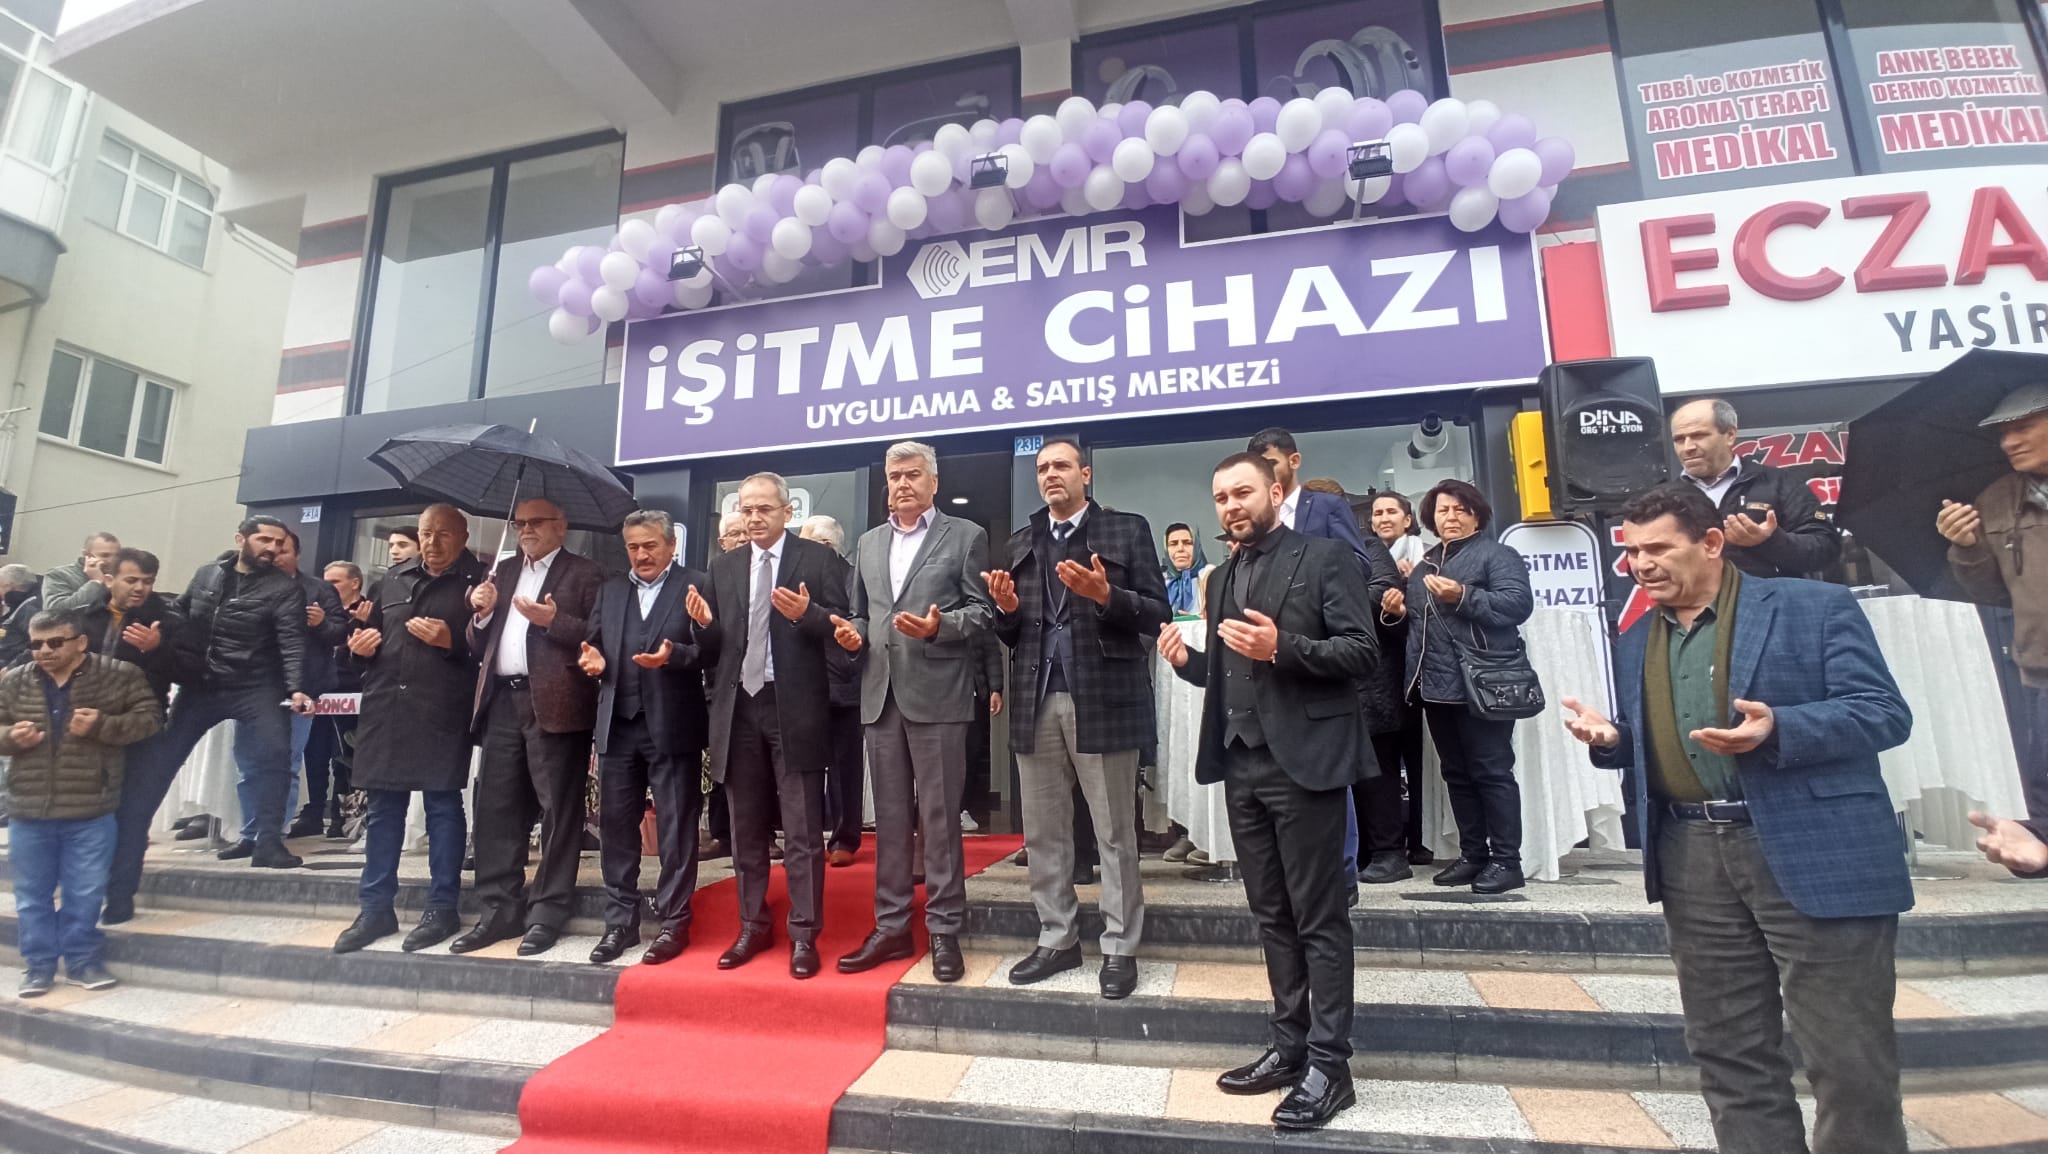 Seydişehir'de EMR işitme cihazları ve uygulama satış merkezi açıldı